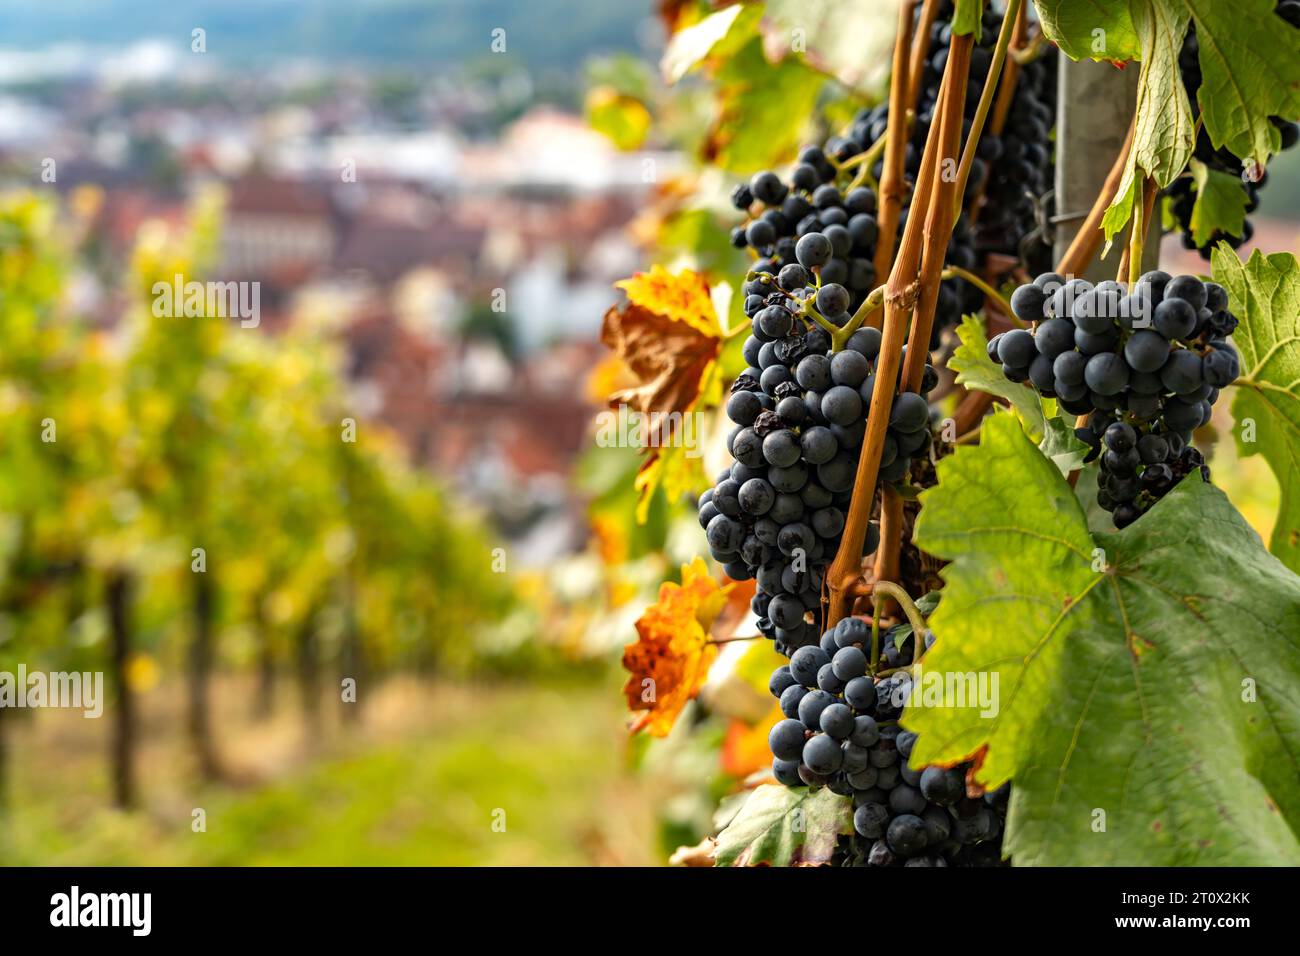 Weintrauben und Weinberg in Esslingen am Neckar, Baden-Württemberg, Deutschland  |  Grapes of a vineyard in Esslingen am Neckar, Baden-Württemberg, Ge Stock Photo